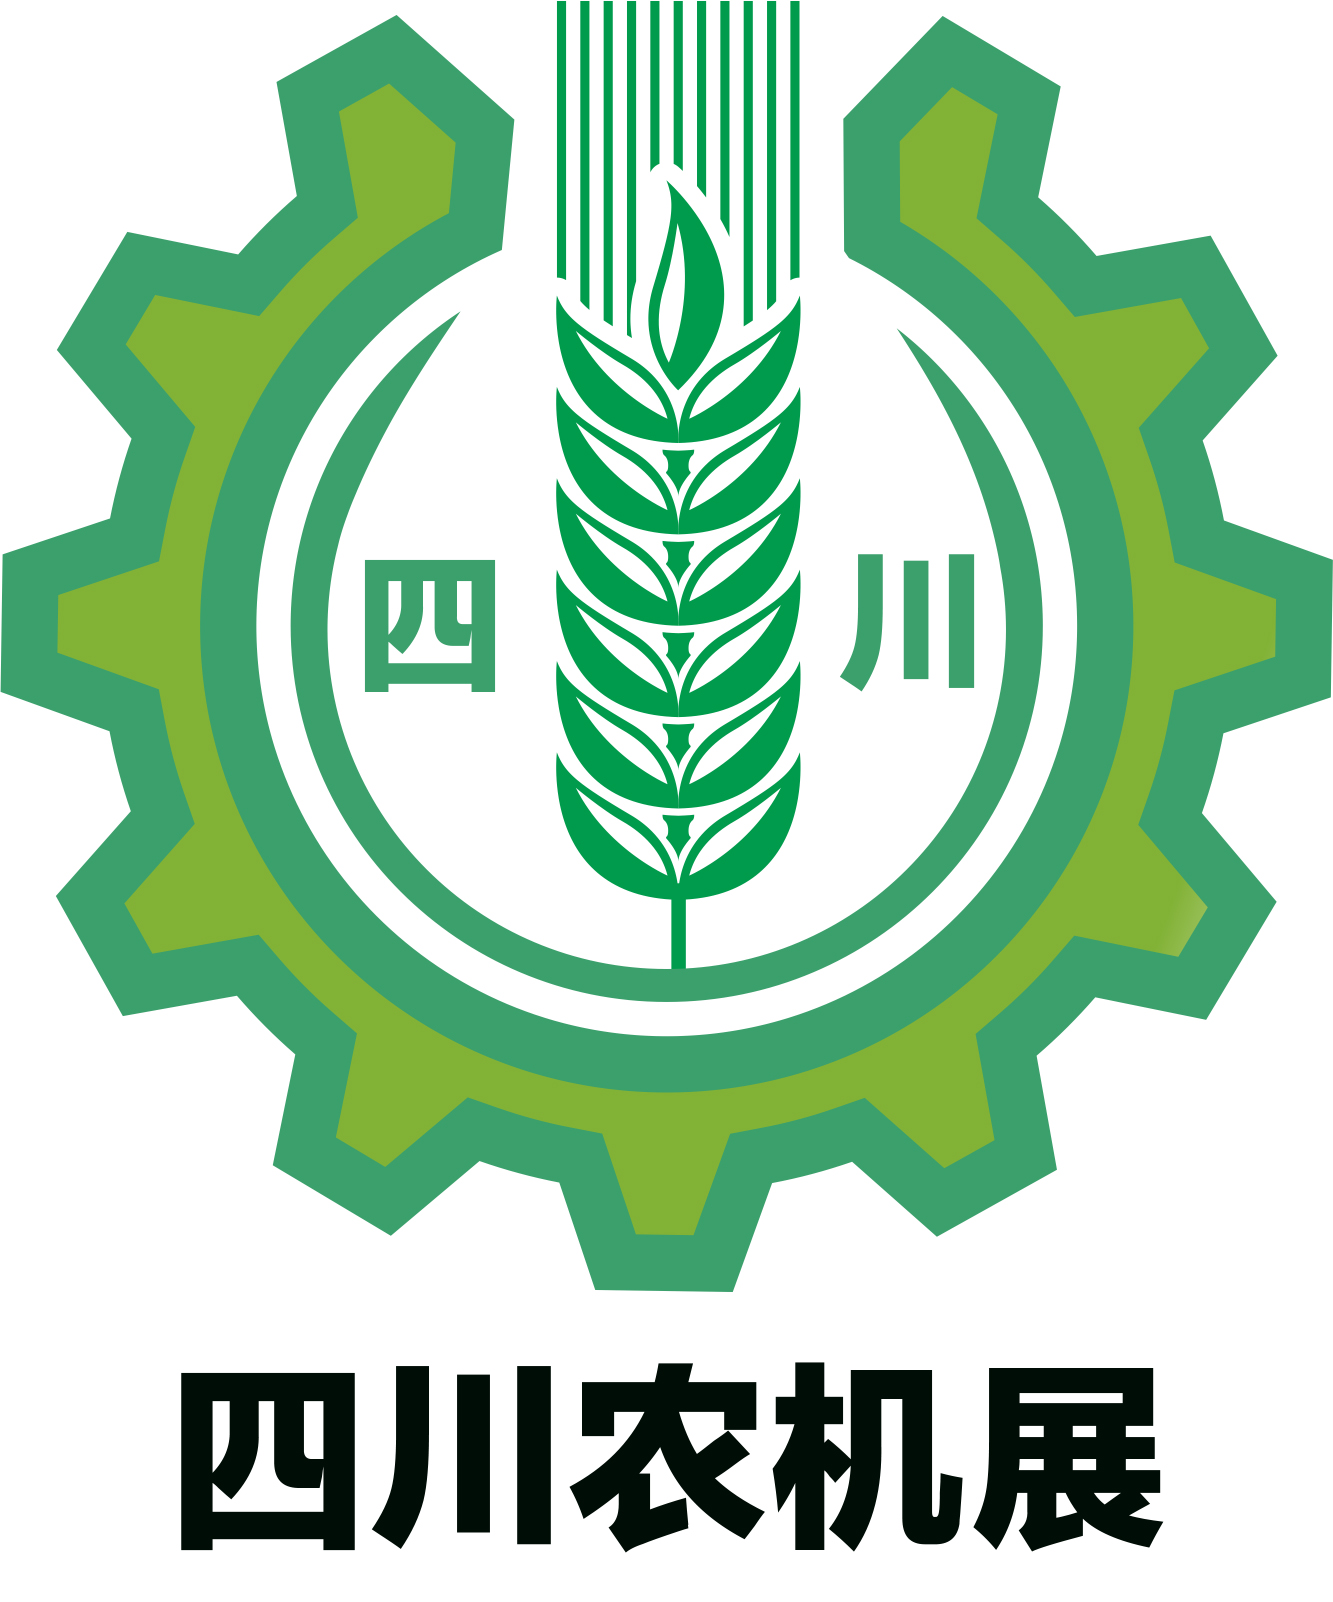 2021四川农业机械展览会